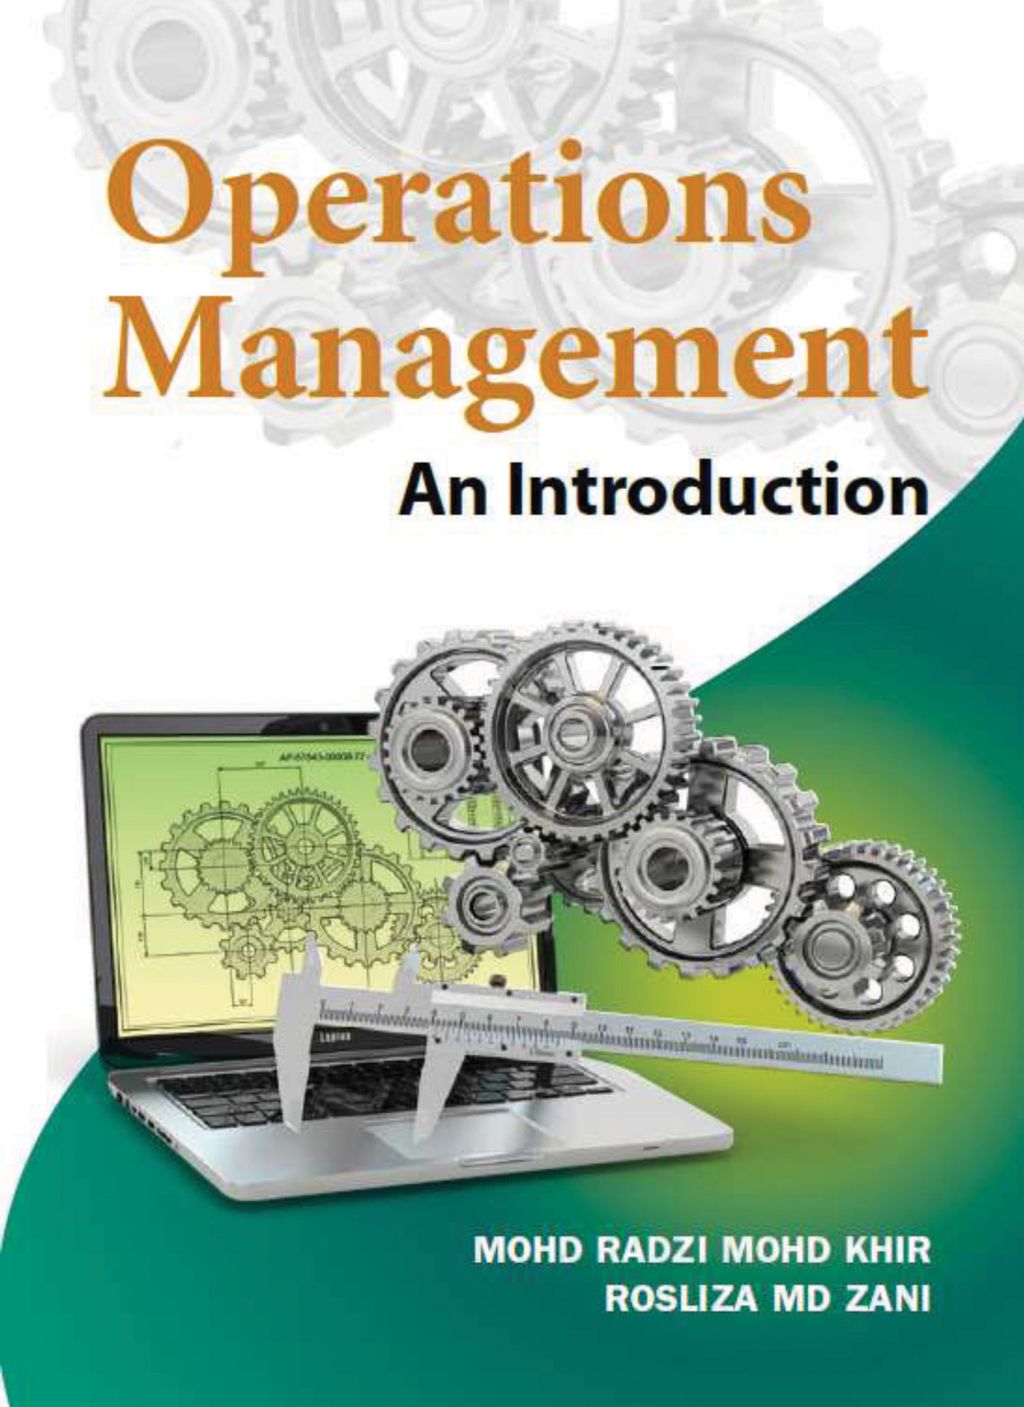 Tip Sheet_Operations Management 1e-1.jpg